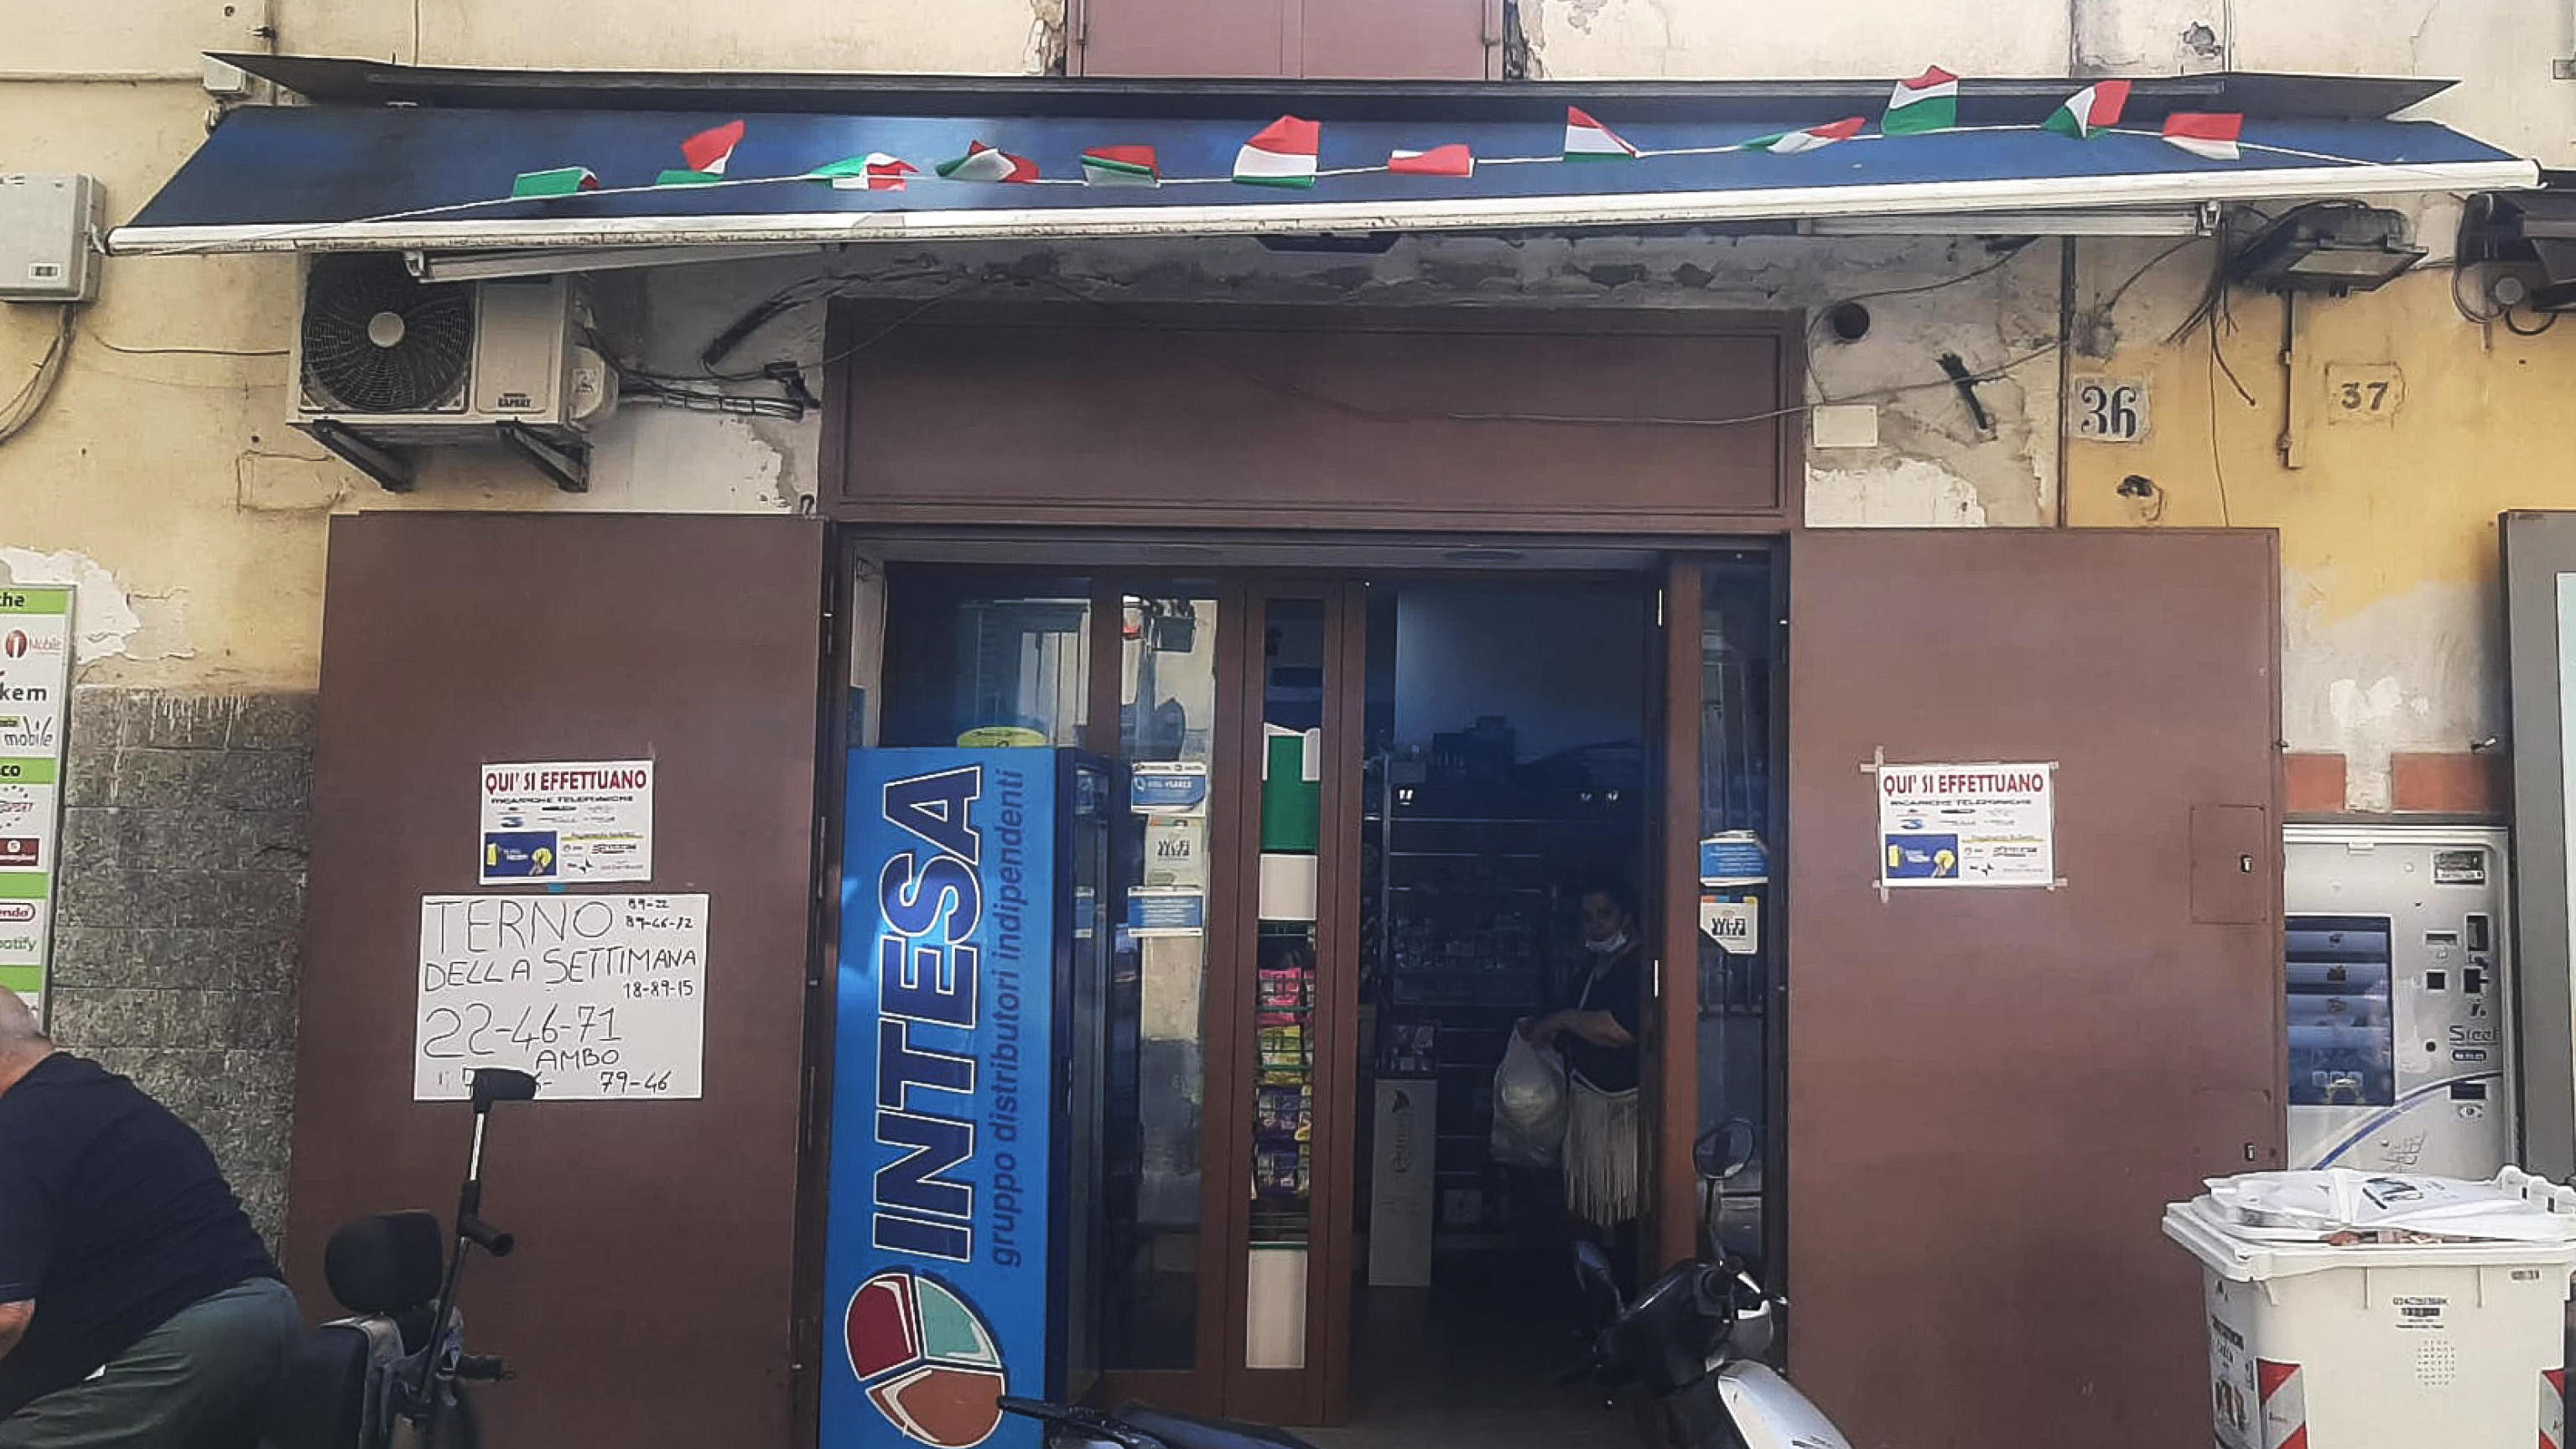 Tabakladen in Neapel